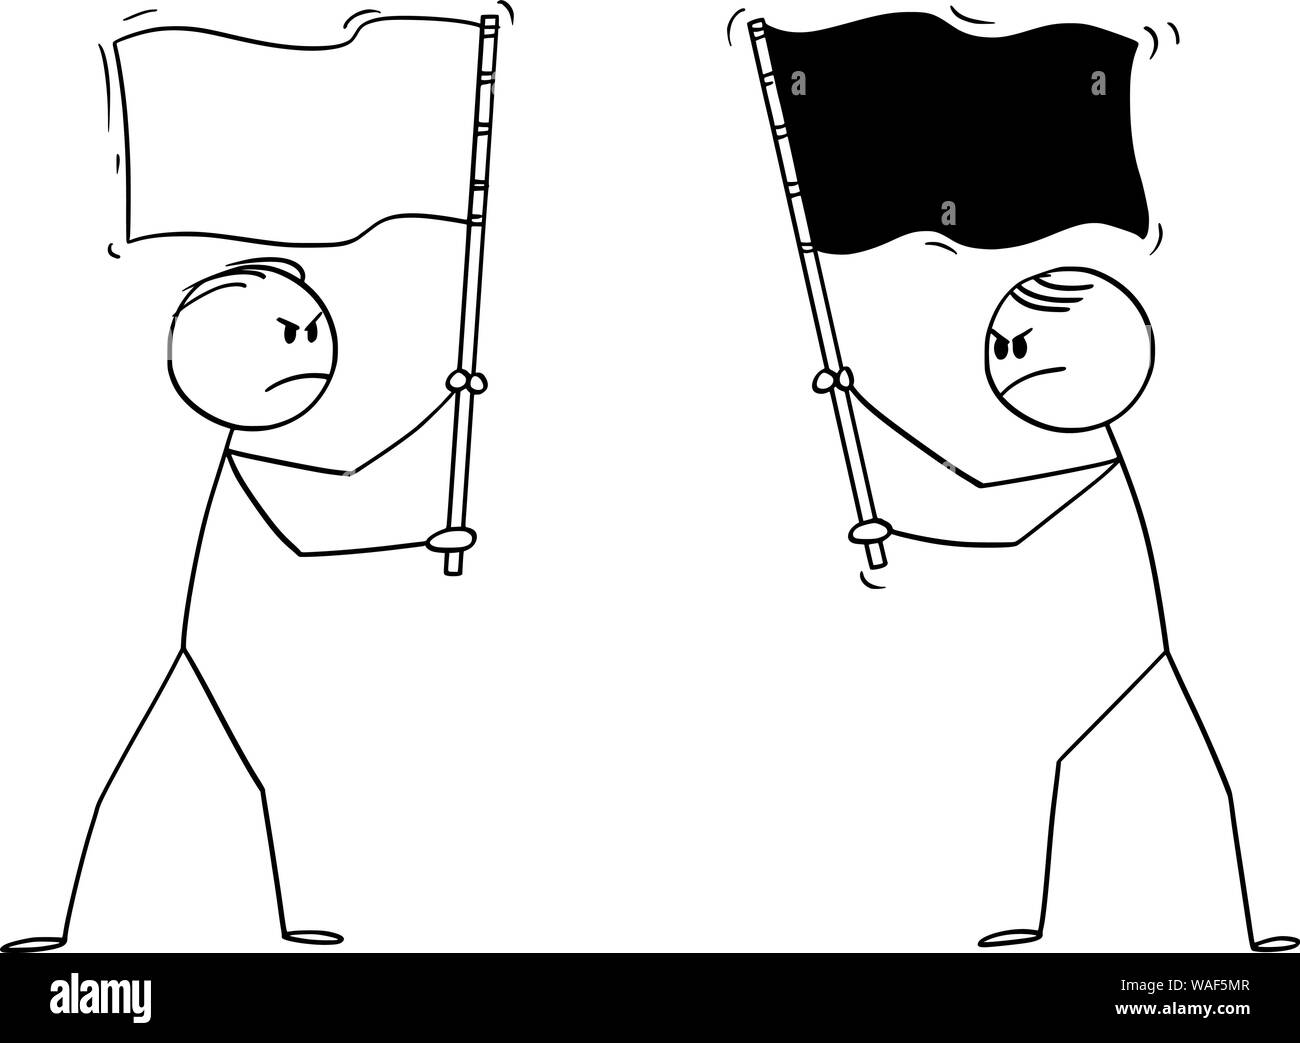 Vektor cartoon Strichmännchen Zeichnung konzeptuelle Abbildung von zwei böse Männer, Politiker oder Unternehmer halten verschiedene Flaggen. Konzept des Wettbewerbs und Feindseligkeit. Stock Vektor